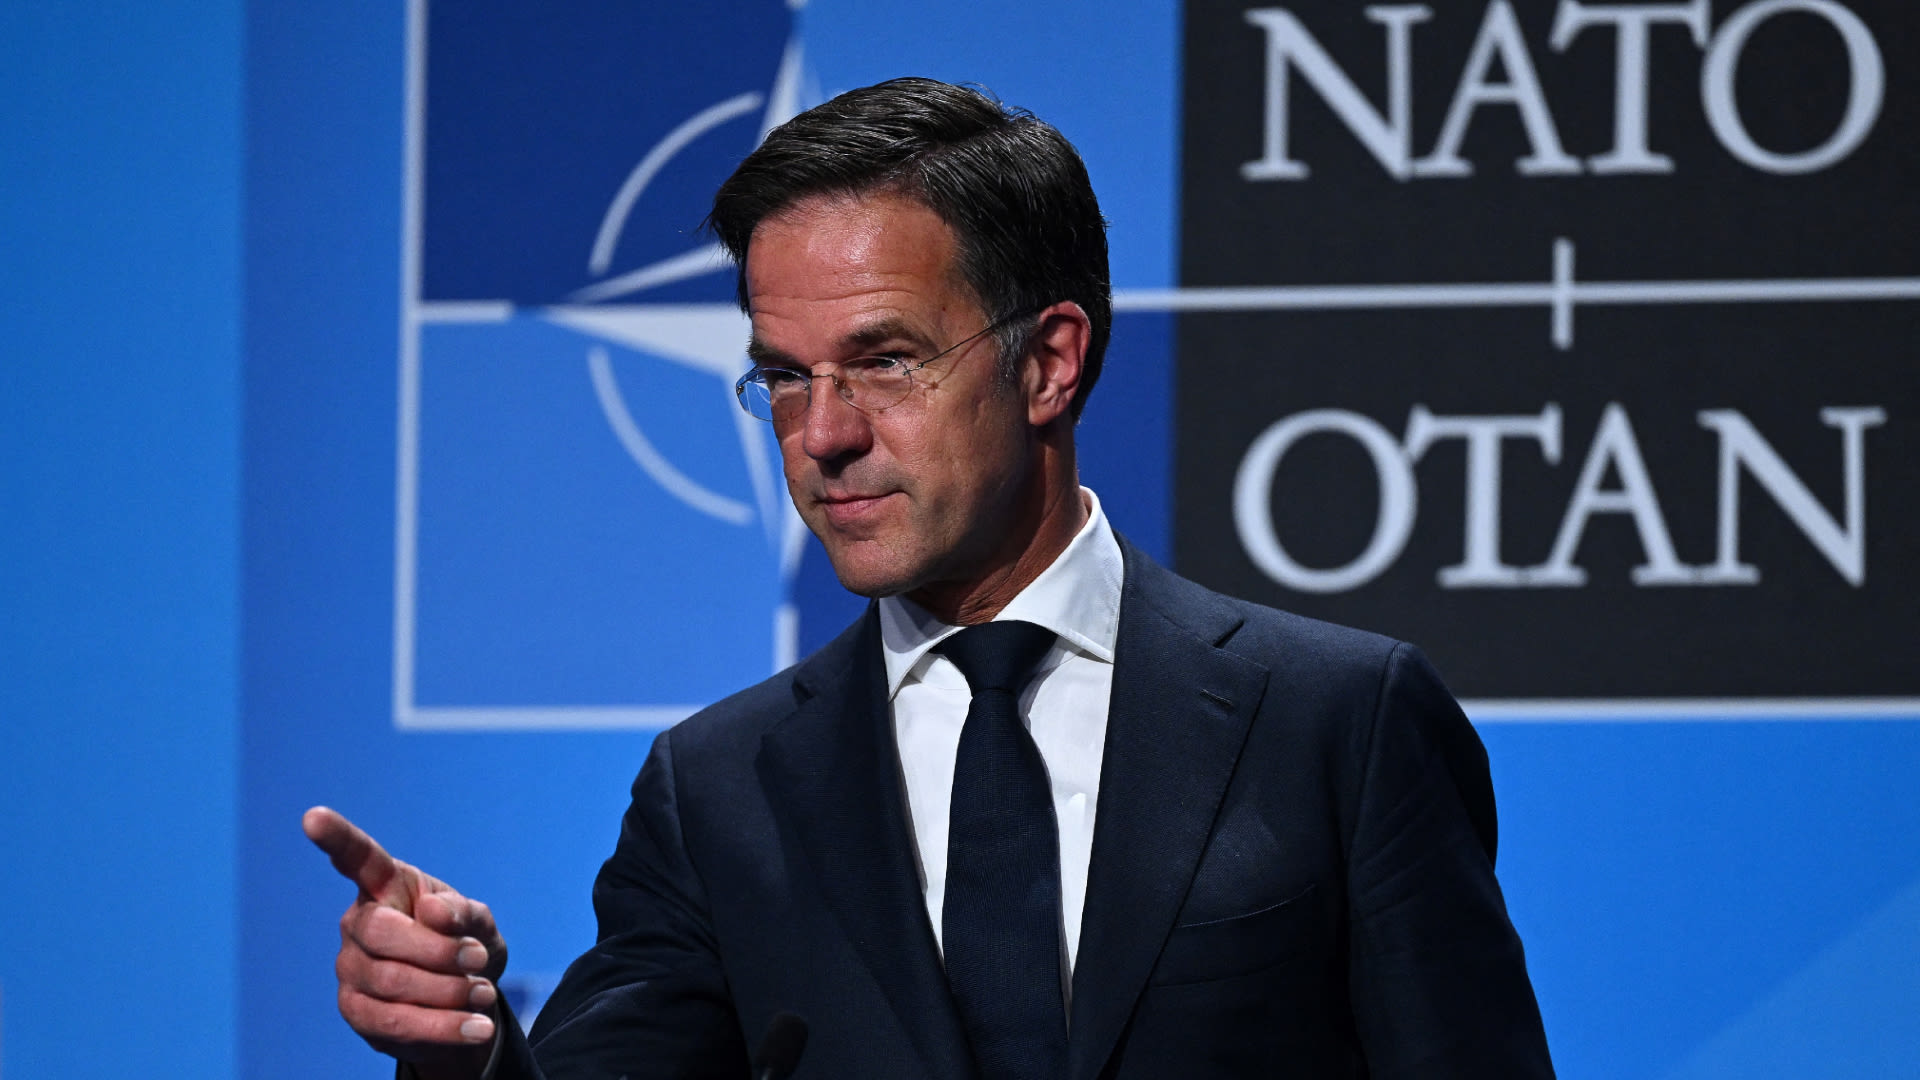 Riant salaris en top arbeidsvoorwaarden: dit gaat Rutte verdienen nu hij NAVO-topman wordt